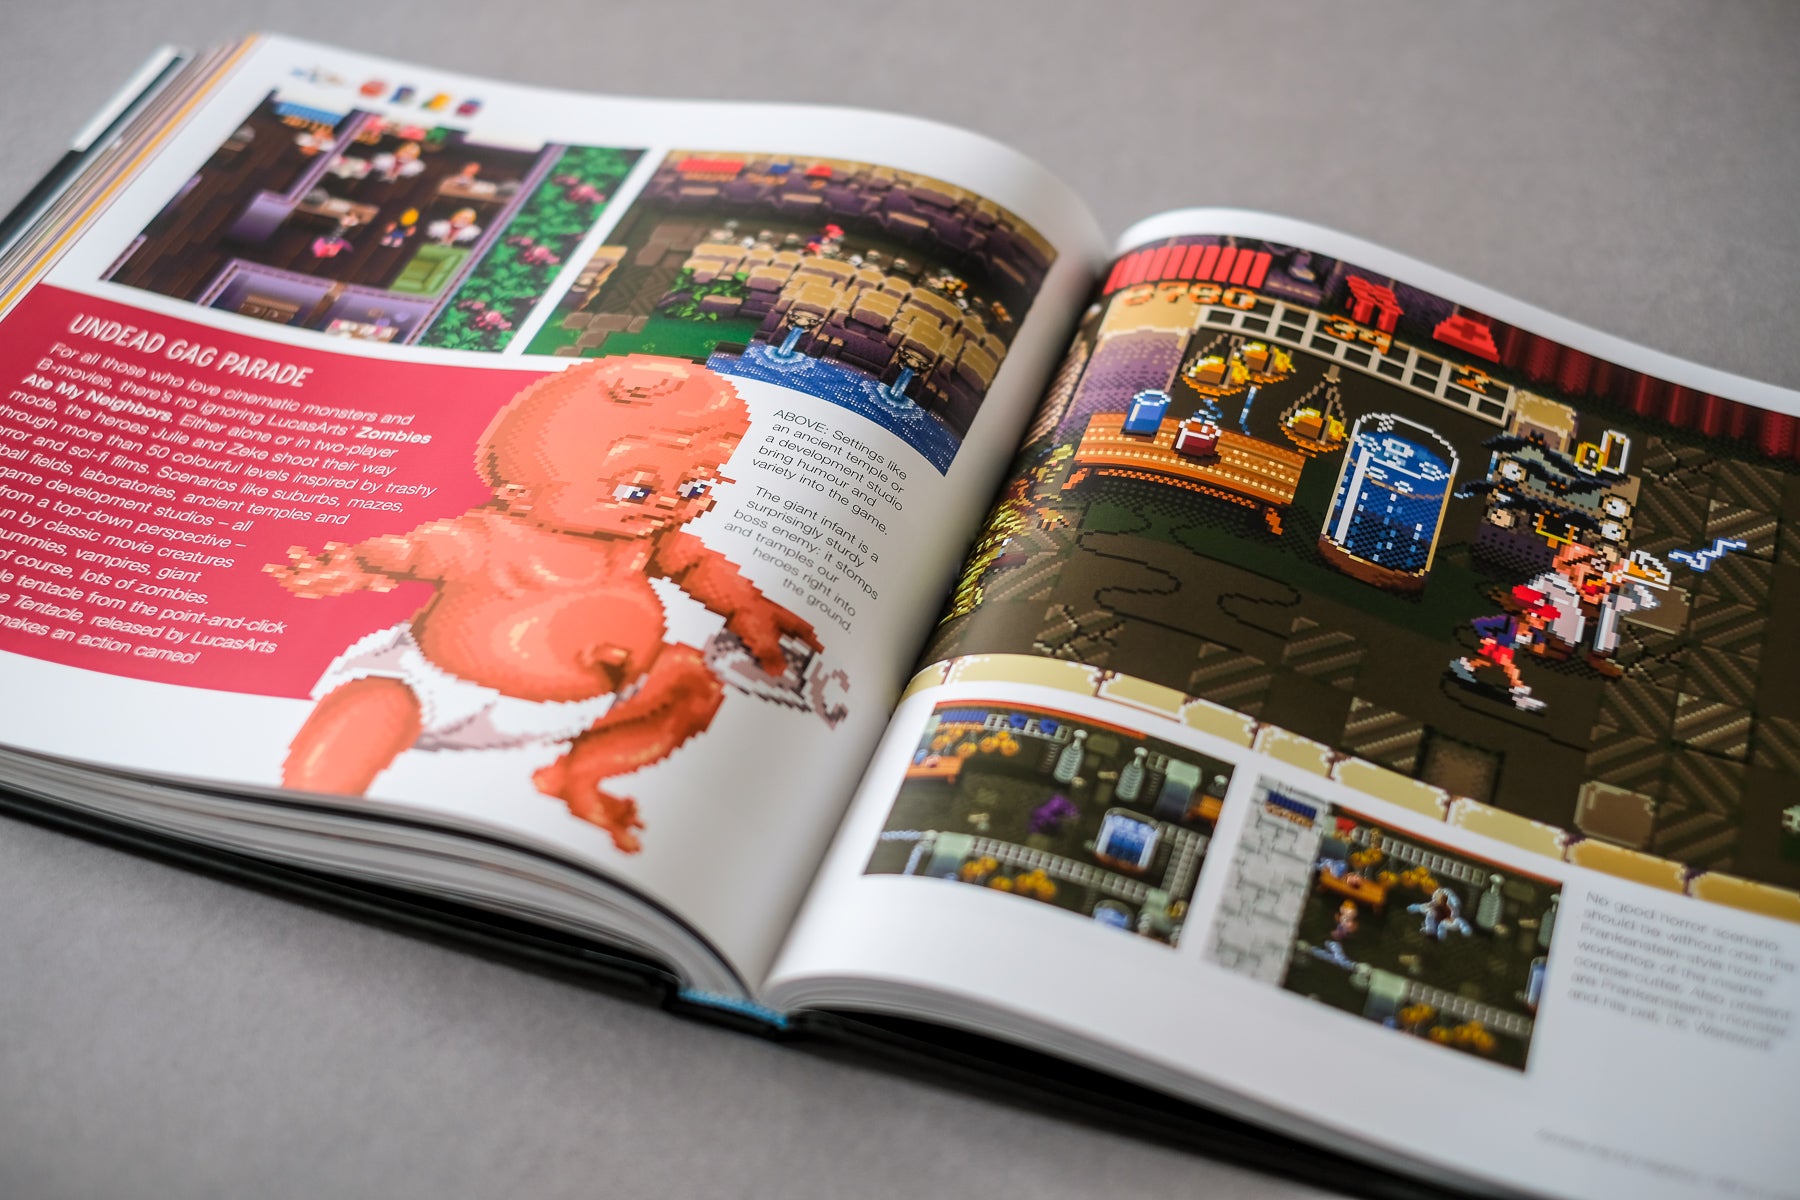 The SNES Pixel Book